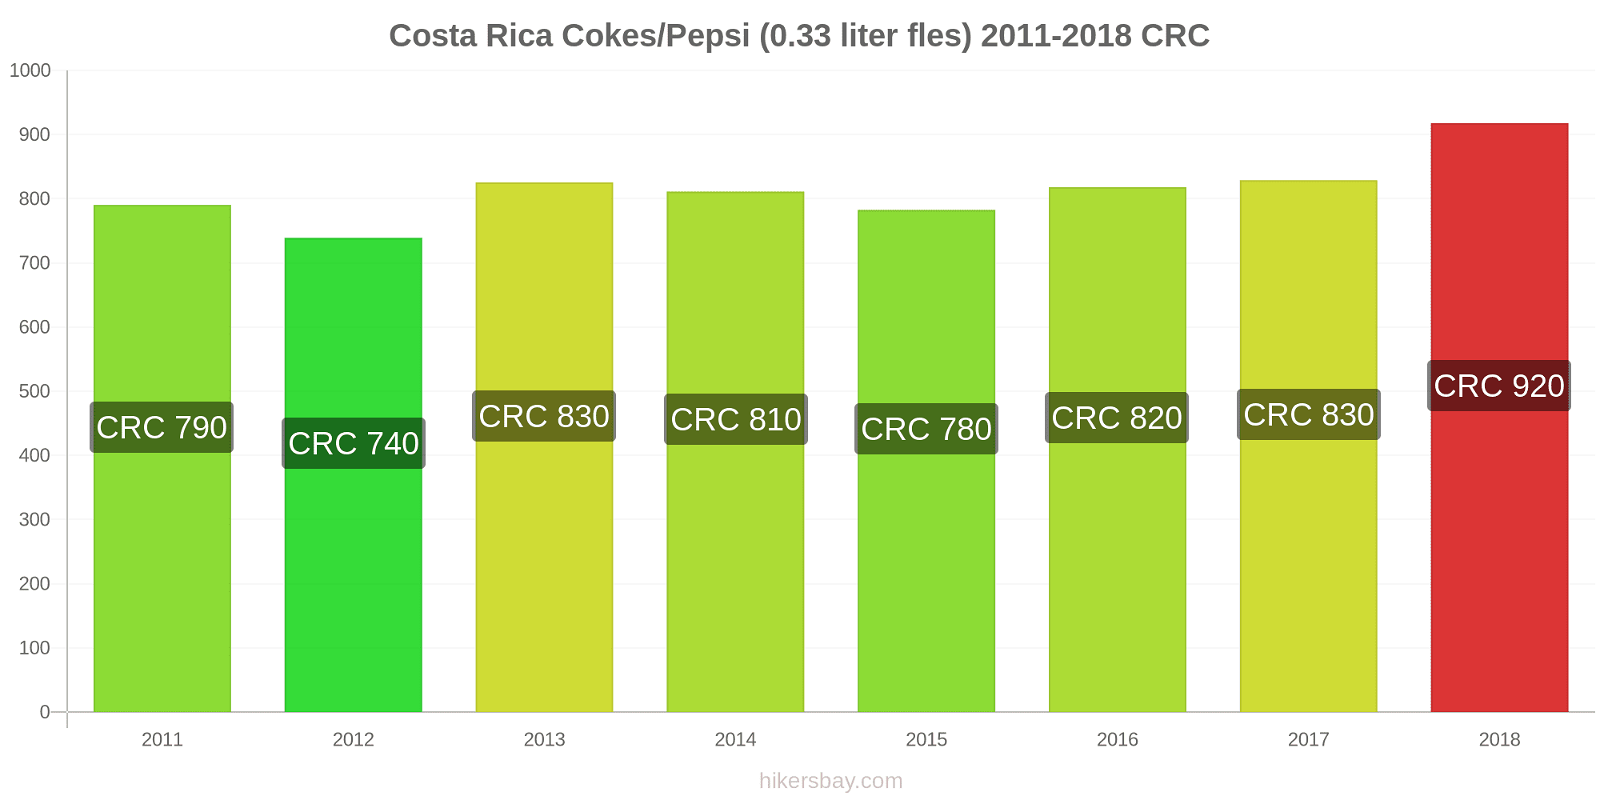 Costa Rica prijswijzigingen Cokes/Pepsi (0,33 literfles) hikersbay.com